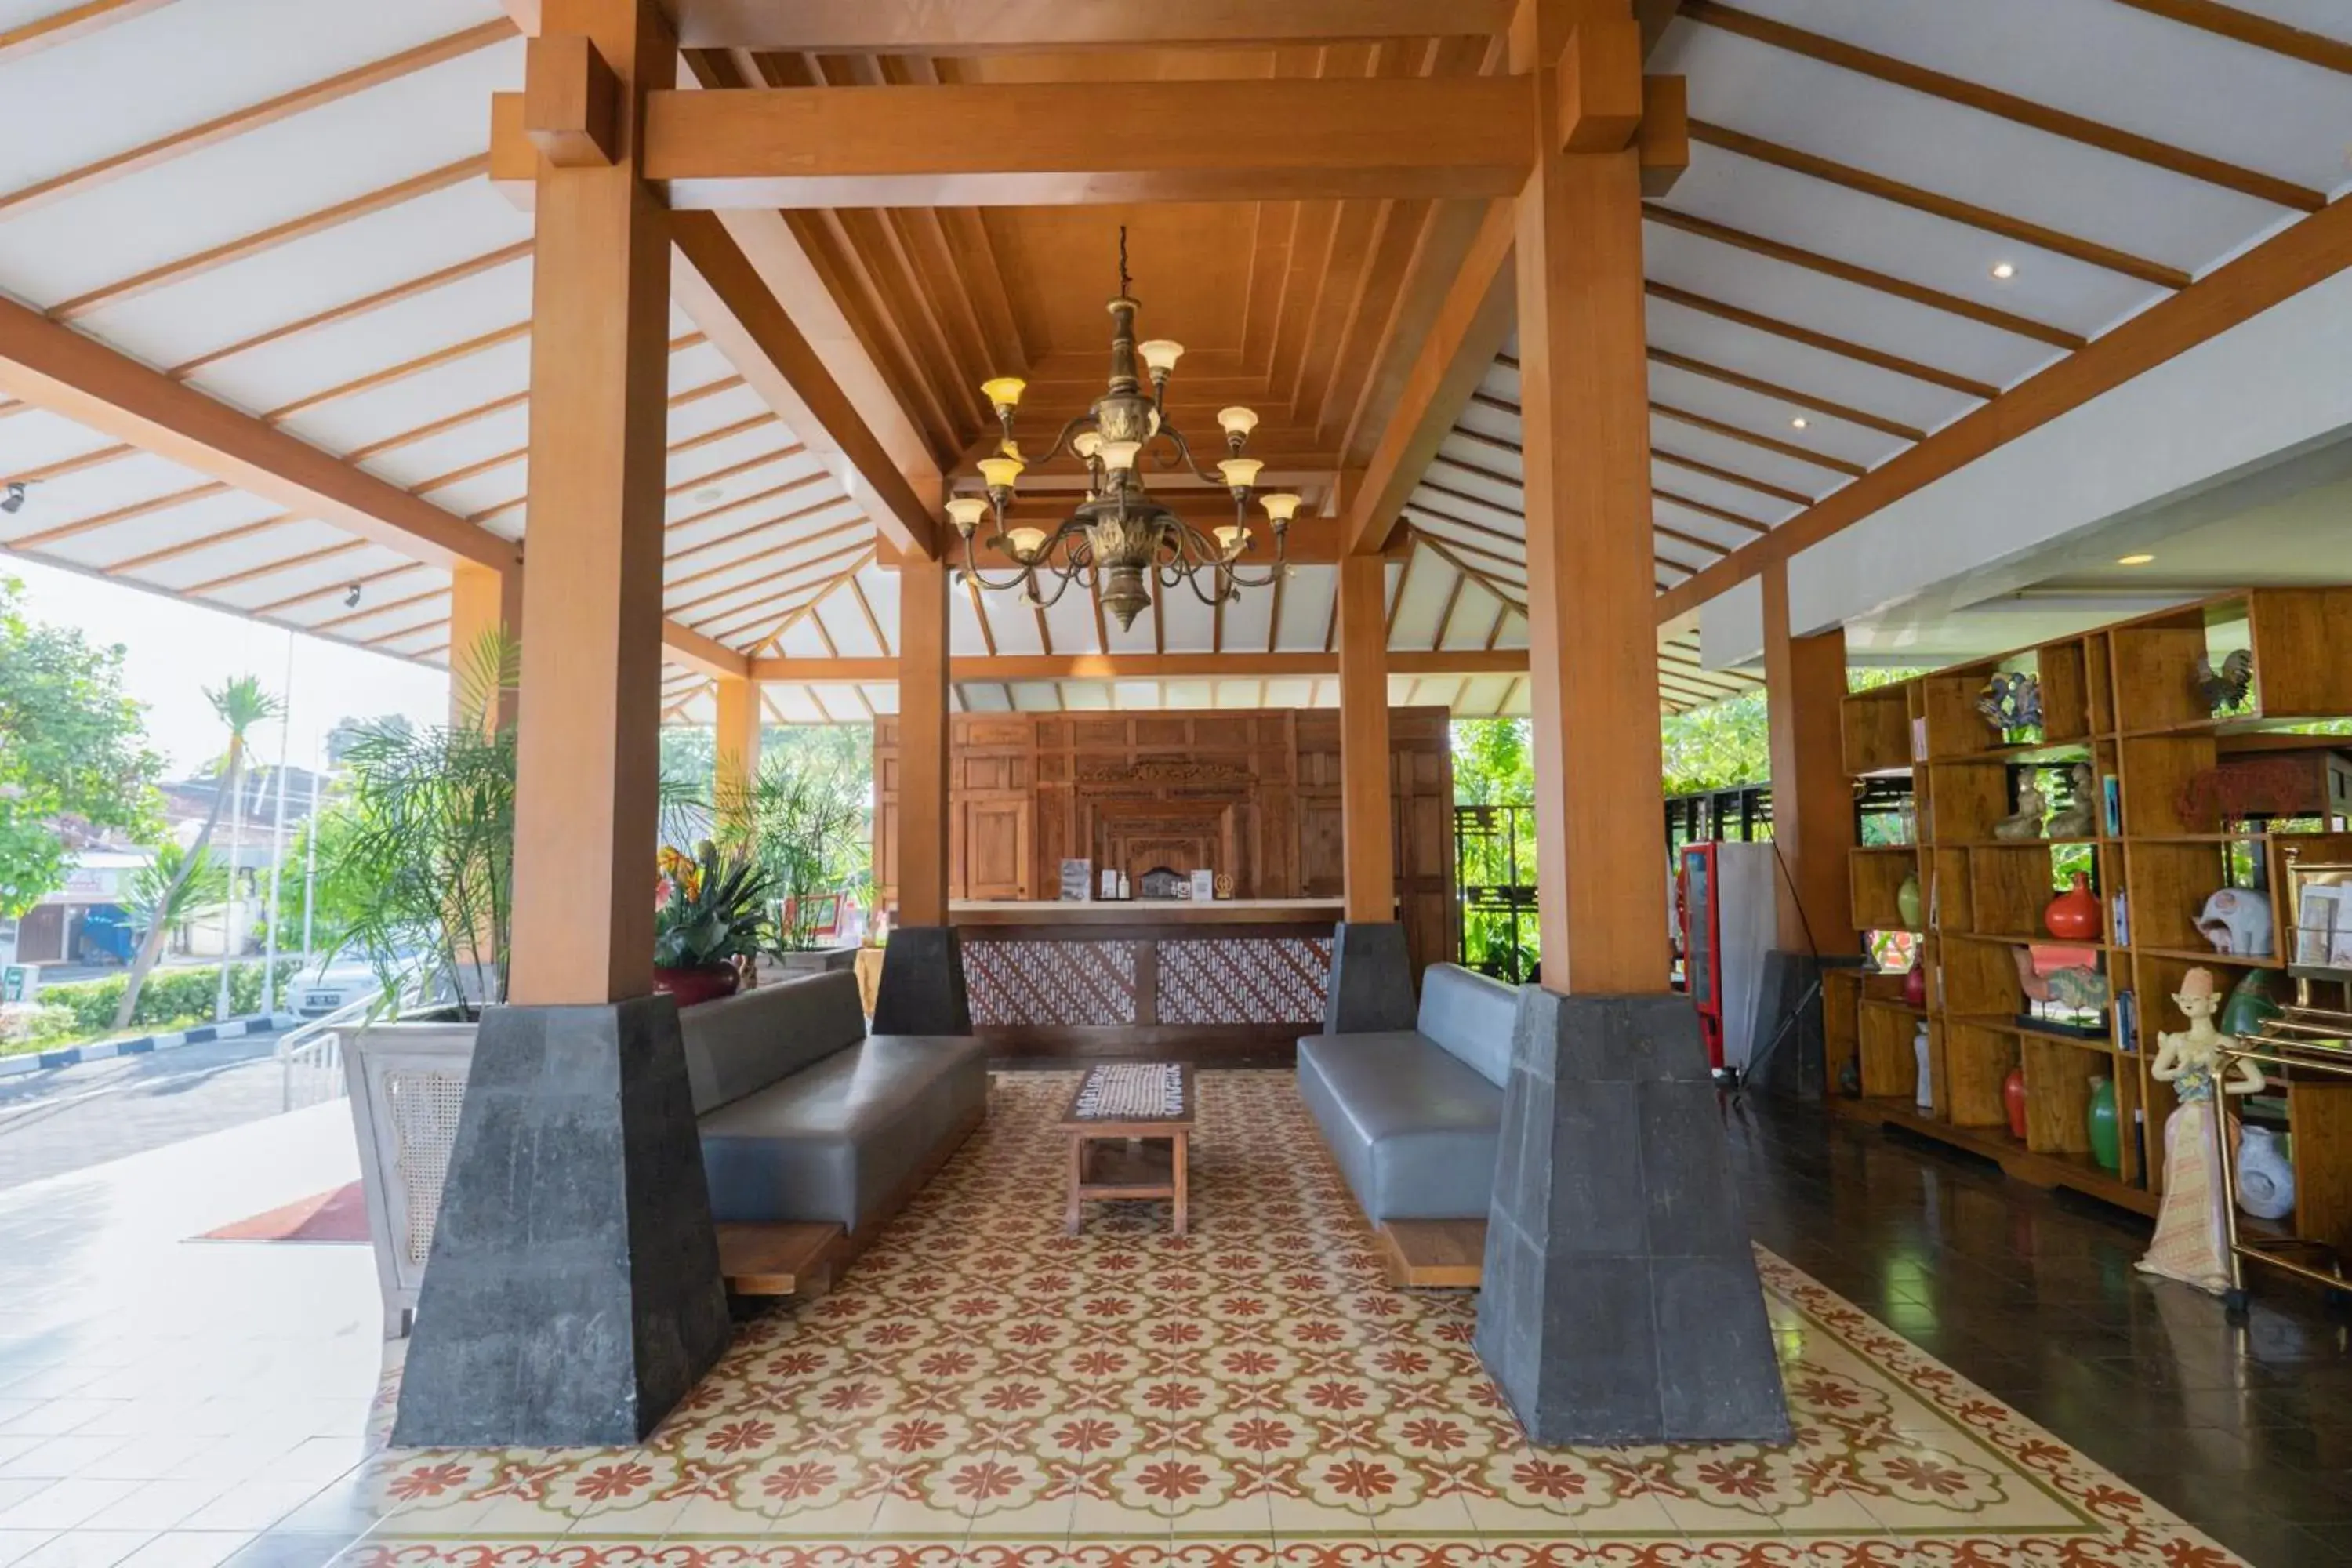 Lobby or reception in Burza Hotel Yogyakarta